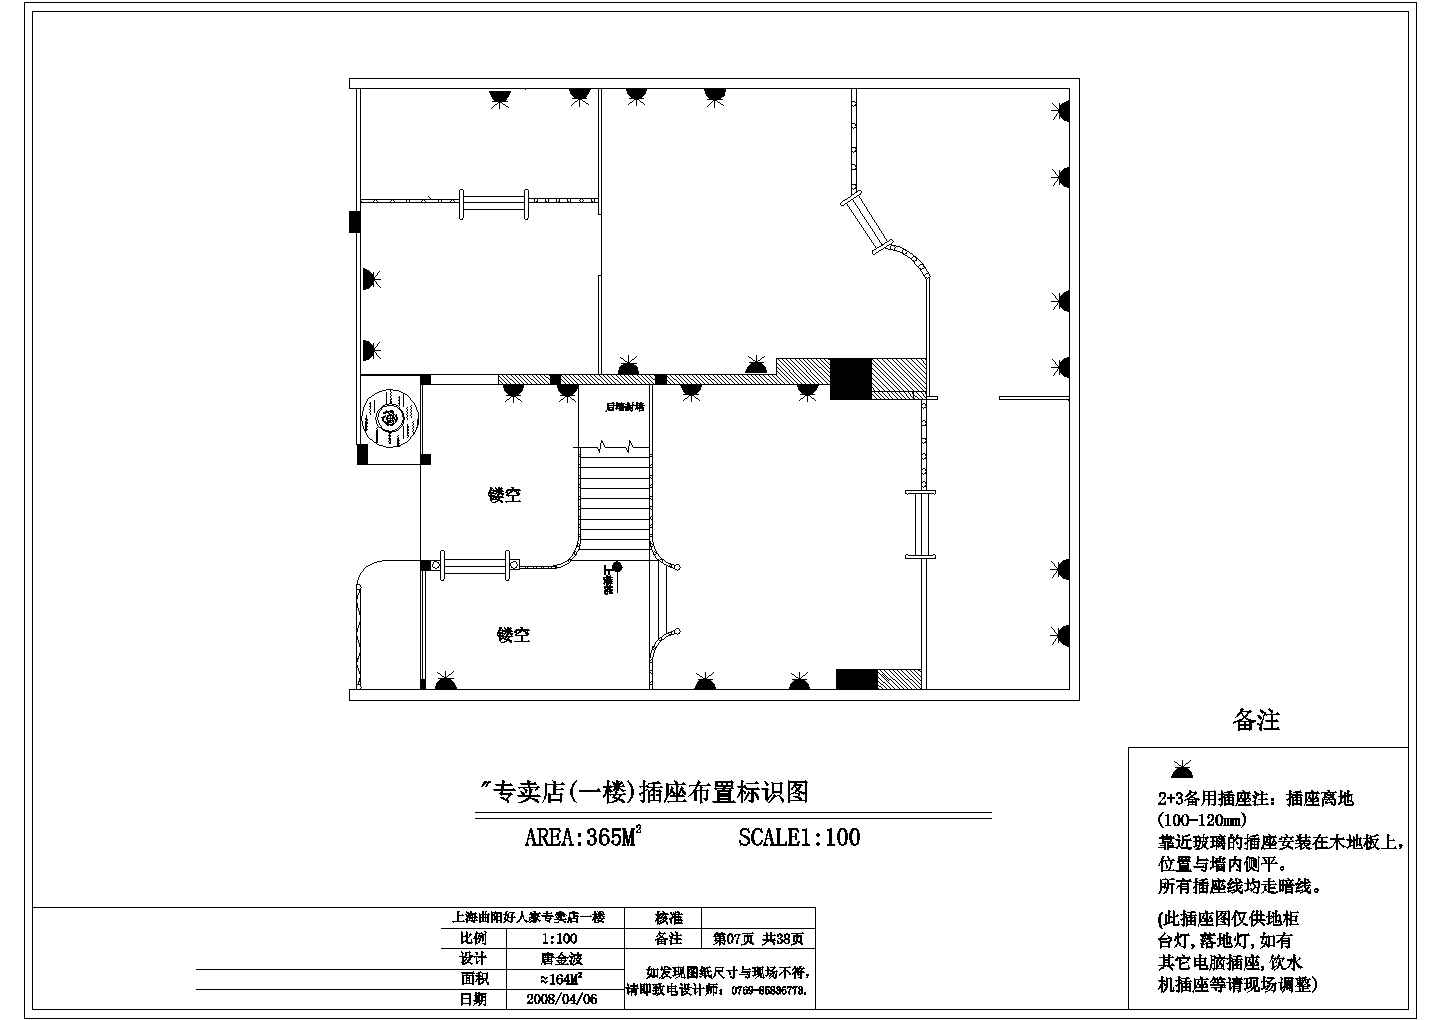 【南京】某地一套小型球鞋专卖店全套装修设计施工cad图